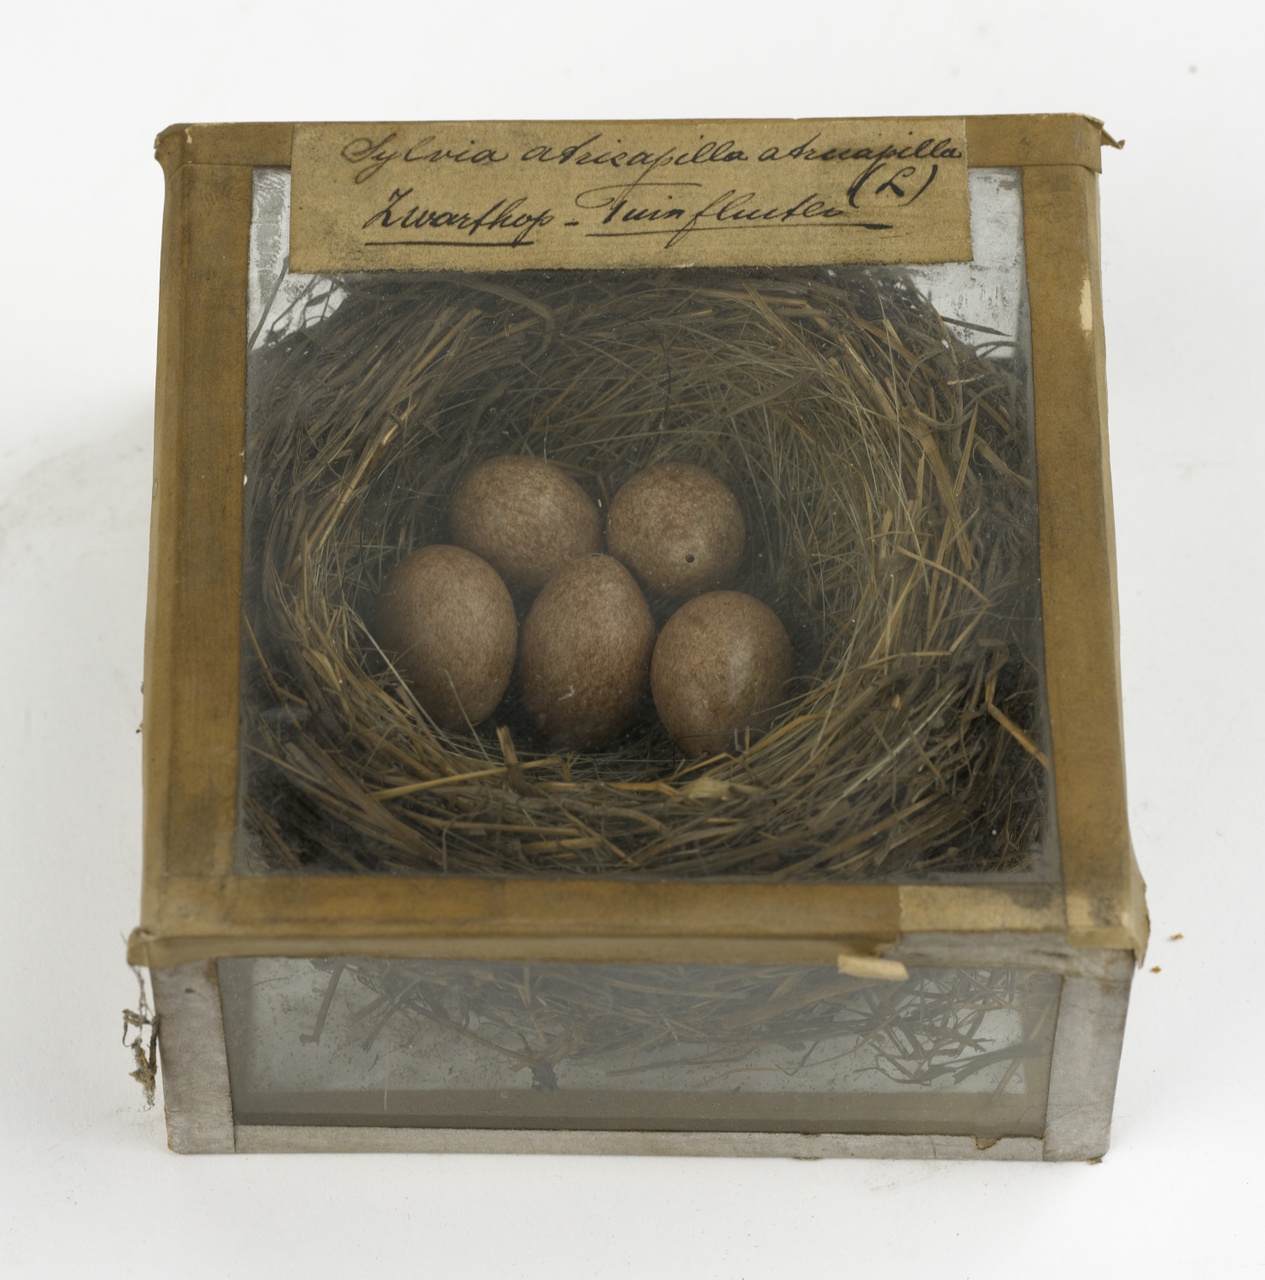 Nest met eieren van zwartkop